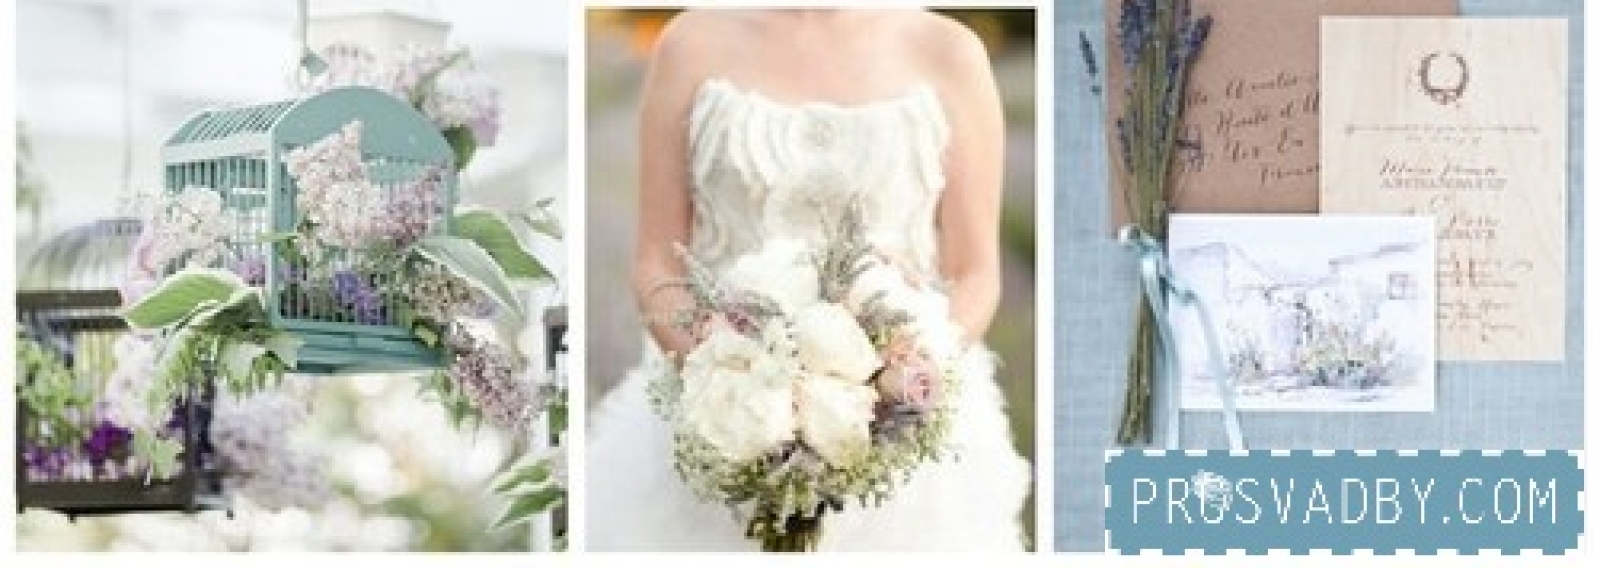 Свадебная палитра: серый, лавандовый, бледно-голубой, деревянные детали + бесплатные макеты свадебной полиграфии от студии Айвори